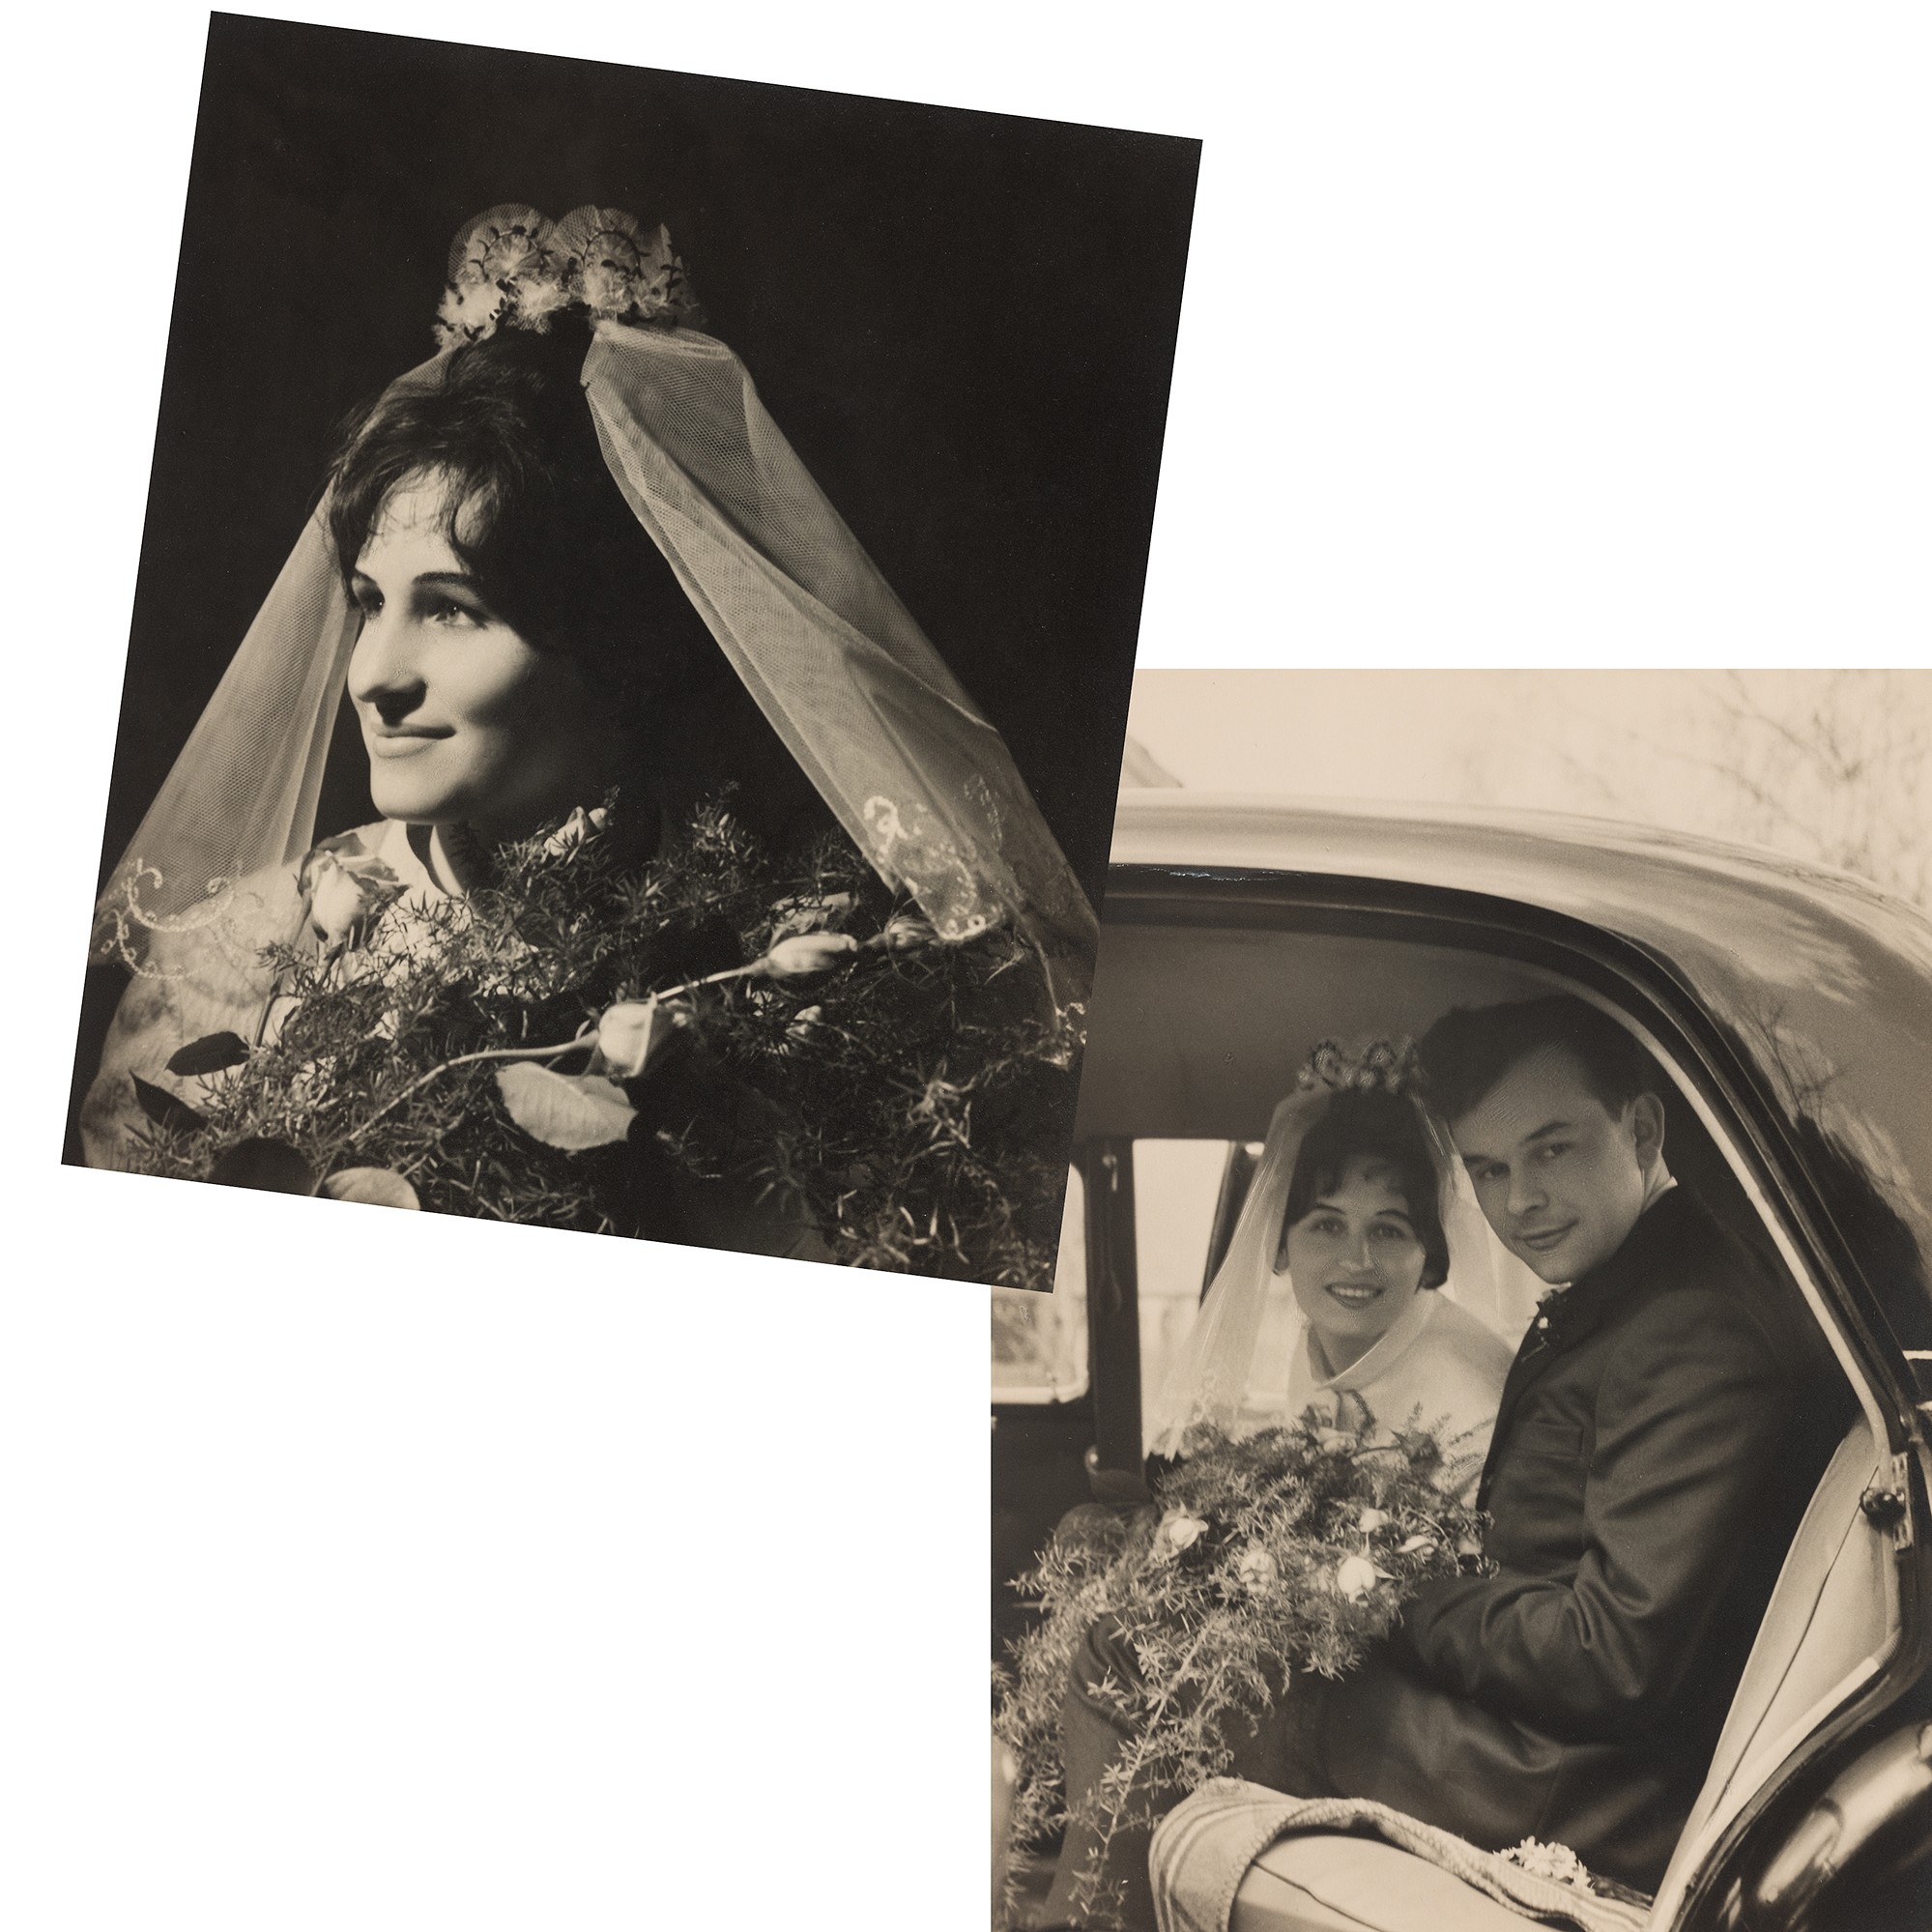 Hochzeit von Annelie und Werner Karrasch und unterbrochenes Hochzeitsfoto von Christa und Horst Wischke, 1966 und 1969.